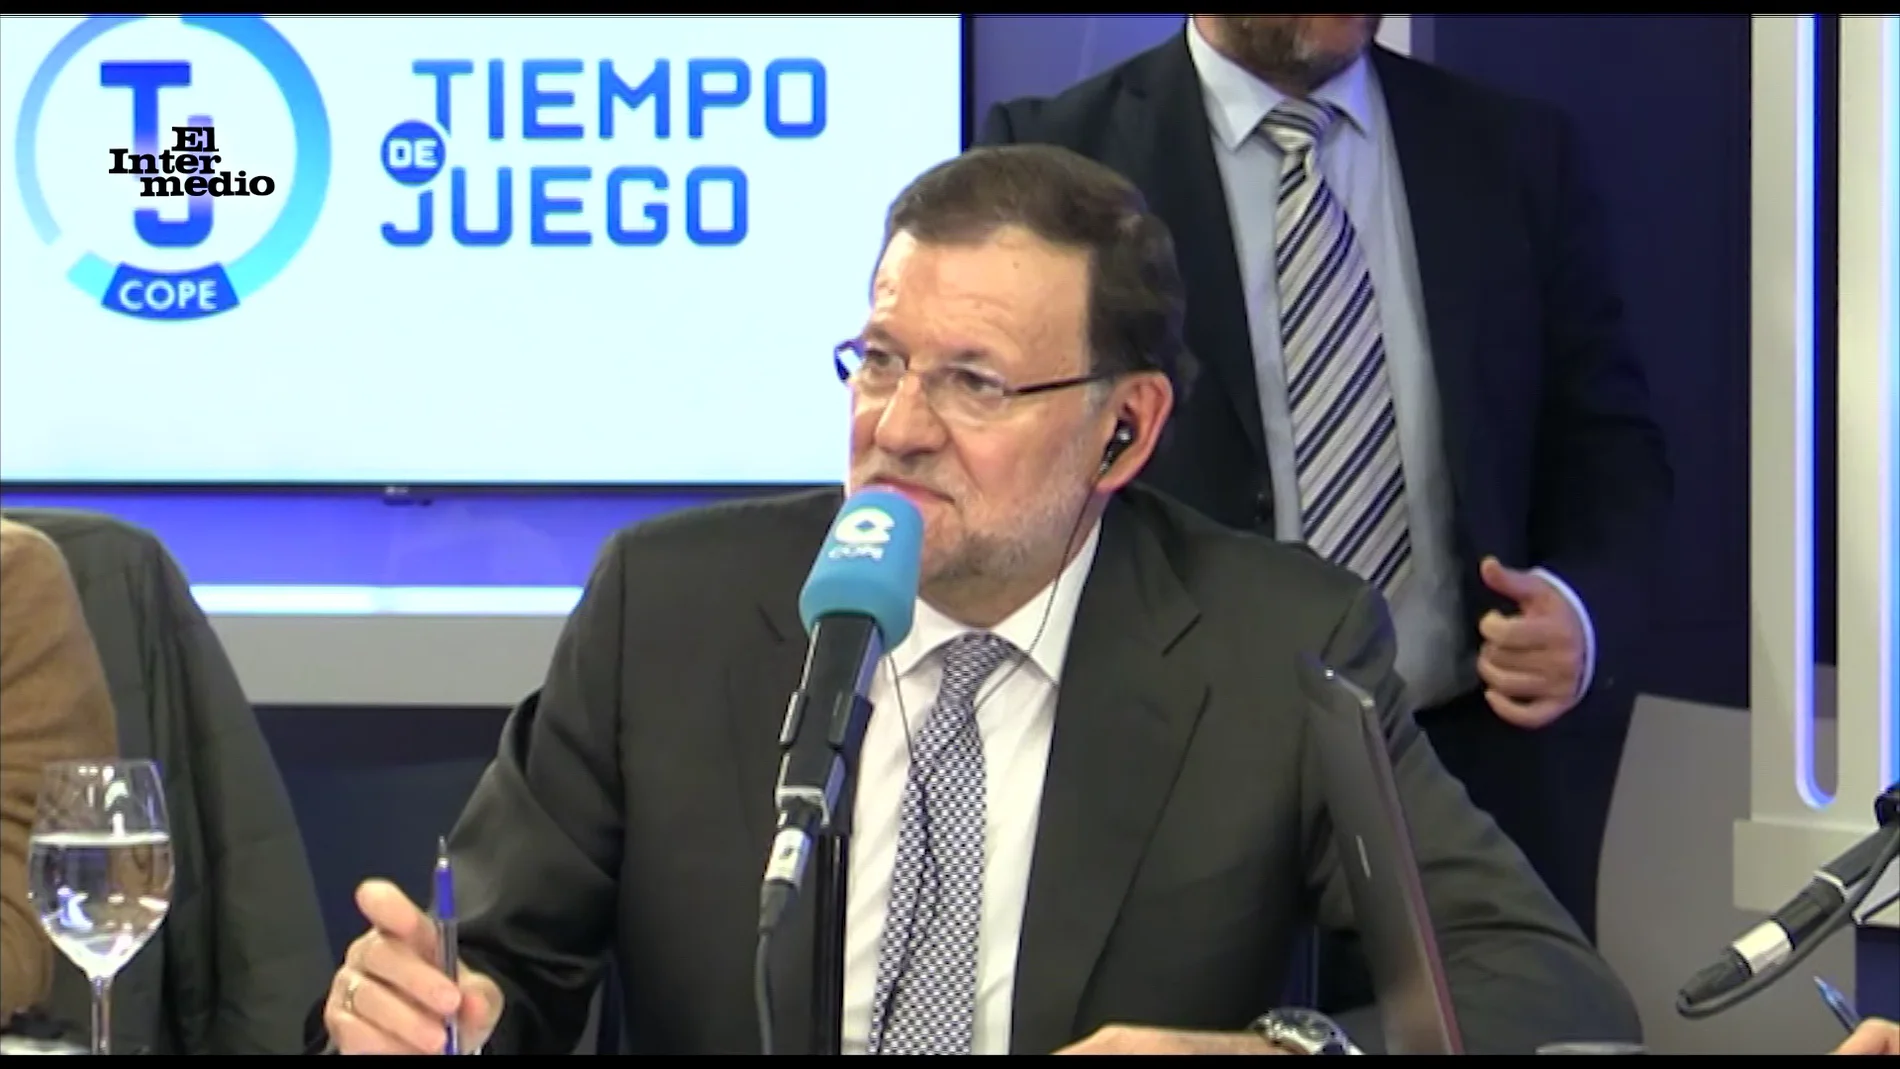 Mariano Rajoy, vídeos manipulados